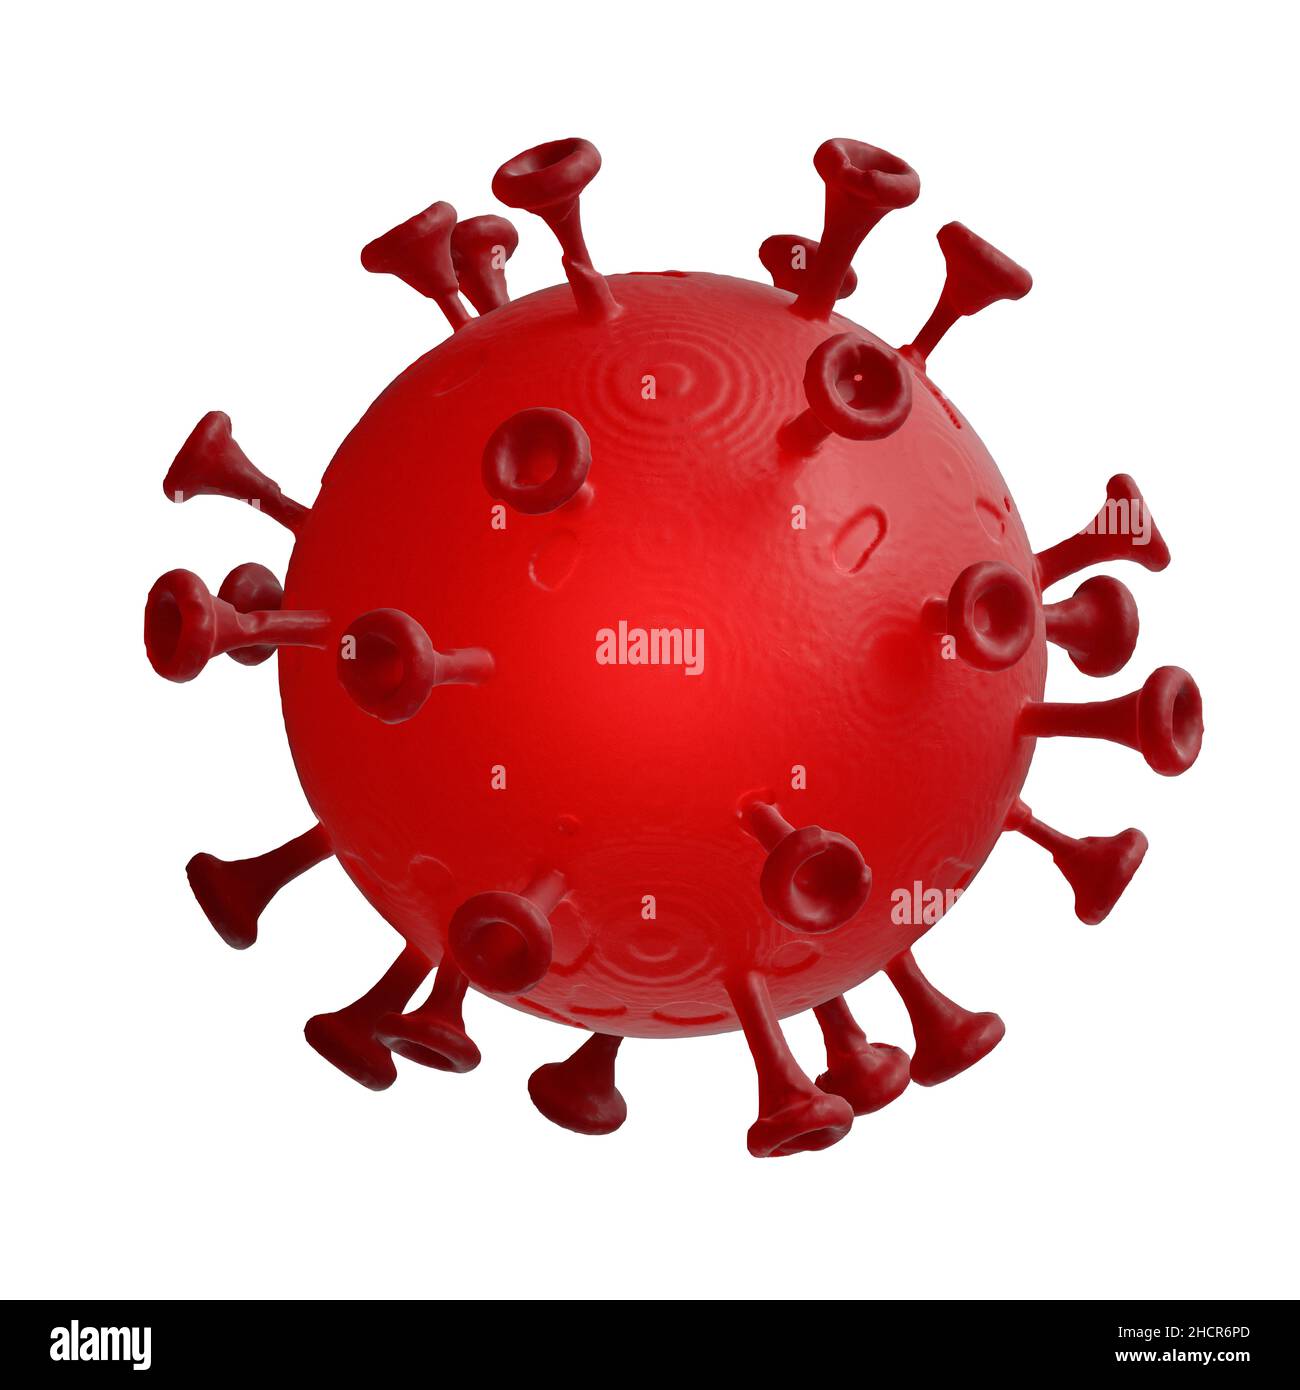 Coronavirus 2019-ncov infezione da influenza. Cellule del virus dell'influenza respiratoria della Cina patogeni. Pericoloso ncov corona virus asiatico, rischio pandemico isoalted ob wh Foto Stock